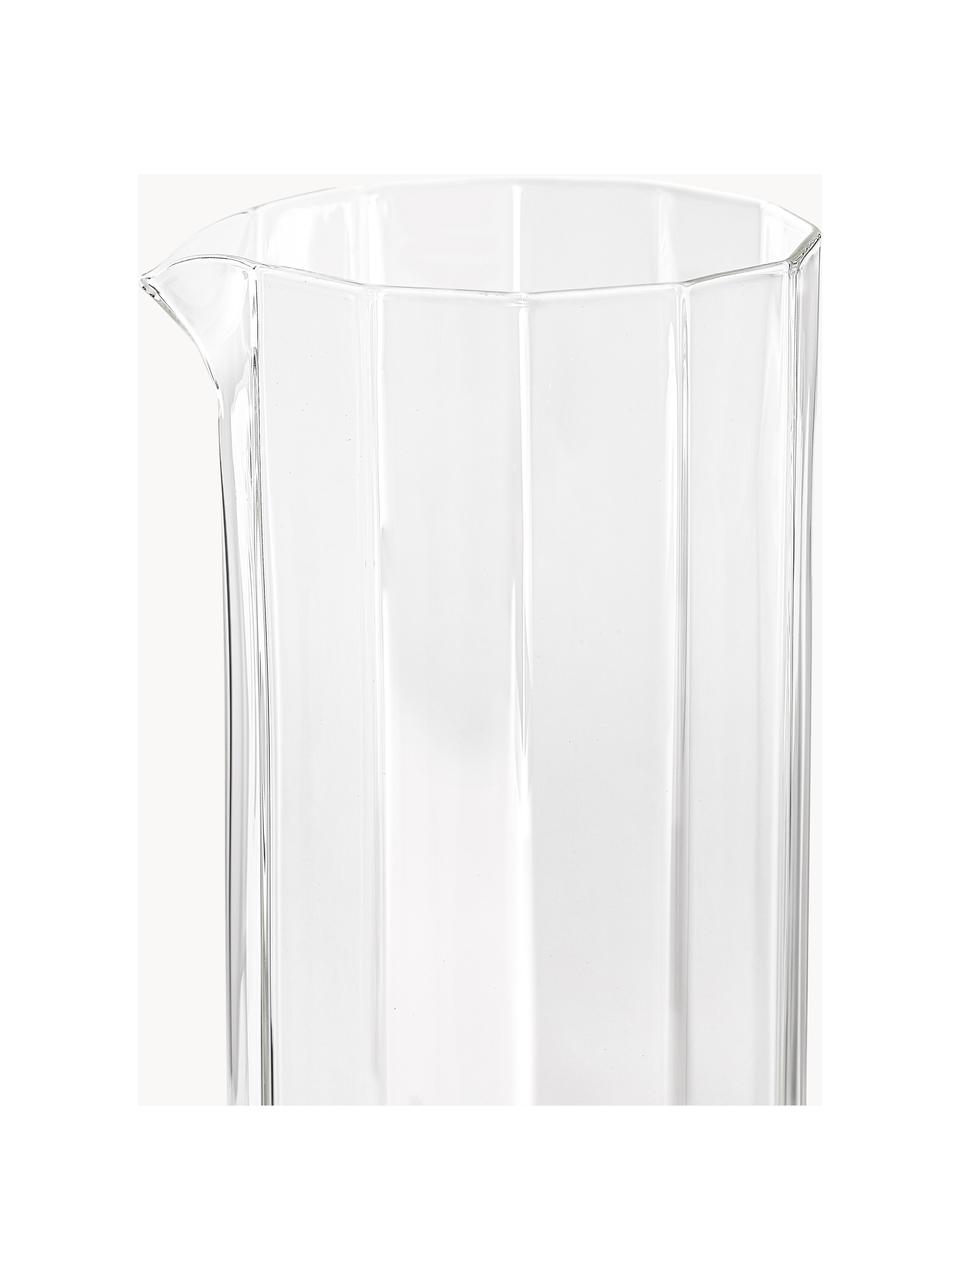 Mundgeblasene Wasserkaraffe Angoli, 1.1 L, Borosilikatglas, mundgeblasen

Entdecke die Vielseitigkeit von Borosilikatglas für Dein Zuhause! Borosilikatglas ist ein hochwertiges, zuverlässiges und robustes Material. Es zeichnet sich durch seine außergewöhnliche Hitzebeständigkeit aus und ist daher ideal für Deinen heißen Tee oder Kaffee. Im Vergleich zu herkömmlichem Glas ist Borosilikatglas widerstandsfähiger gegen Brüche und Risse und somit ein sicherer Begleiter in Deinem Zuhause., Transparent, 1.1 L